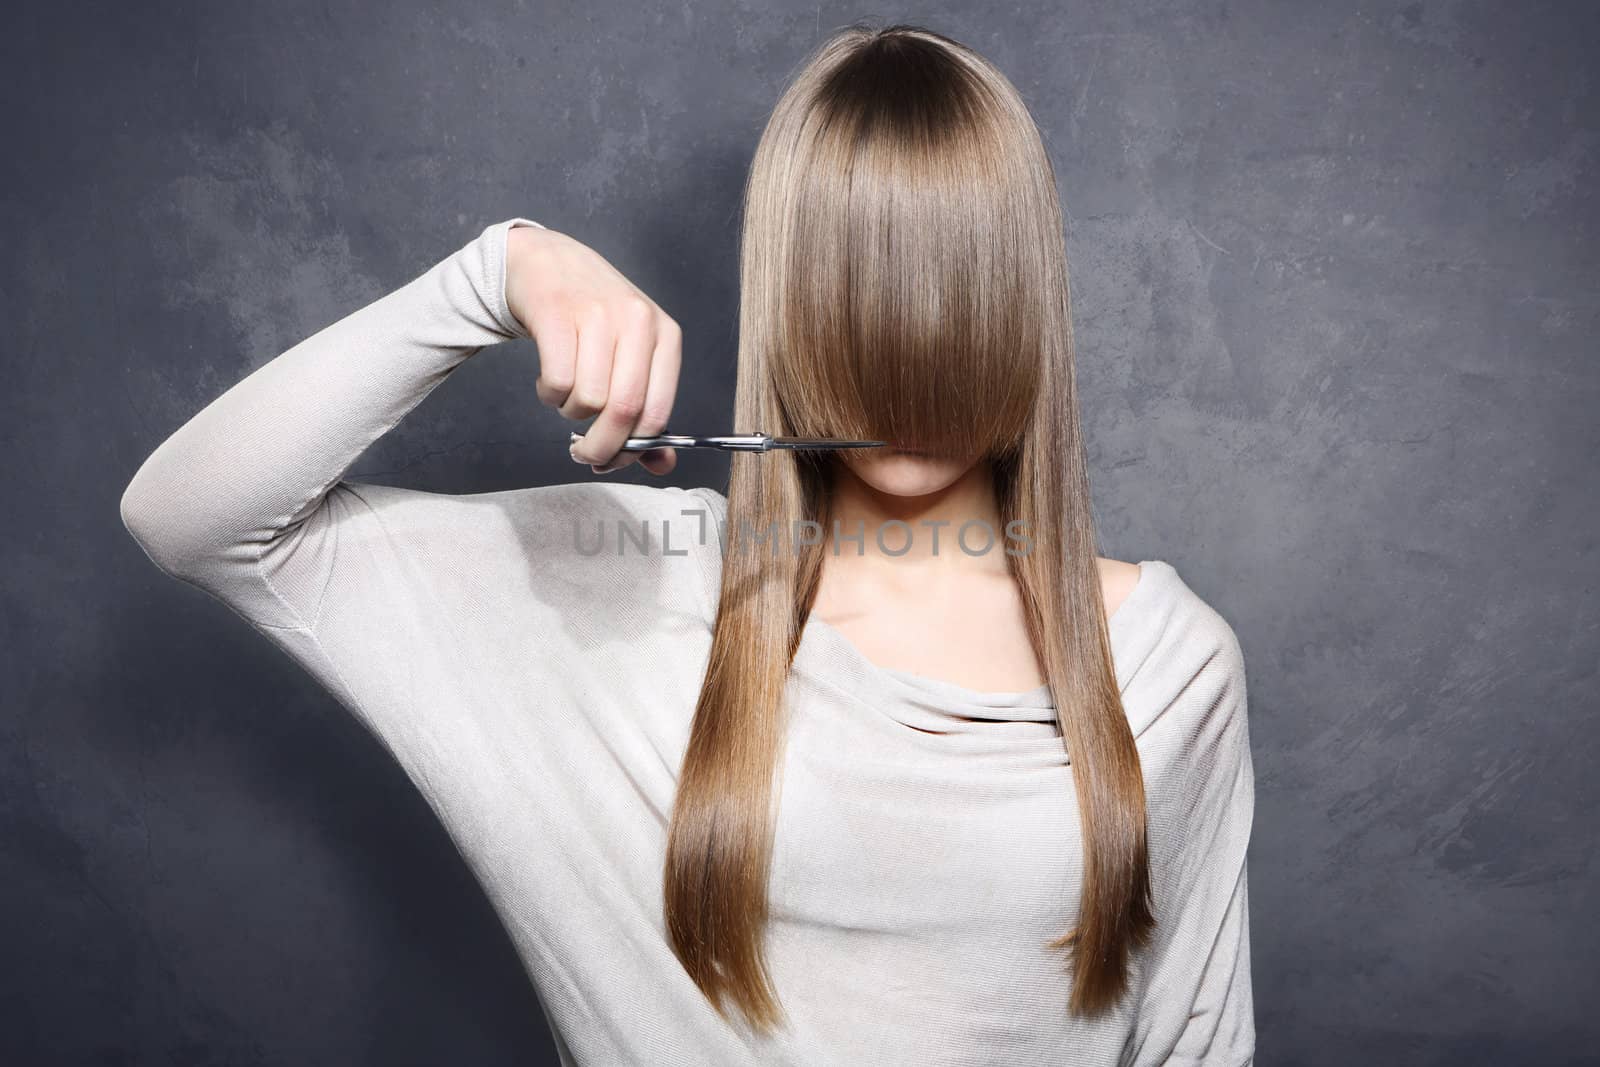 Girl with scissors by robert_przybysz